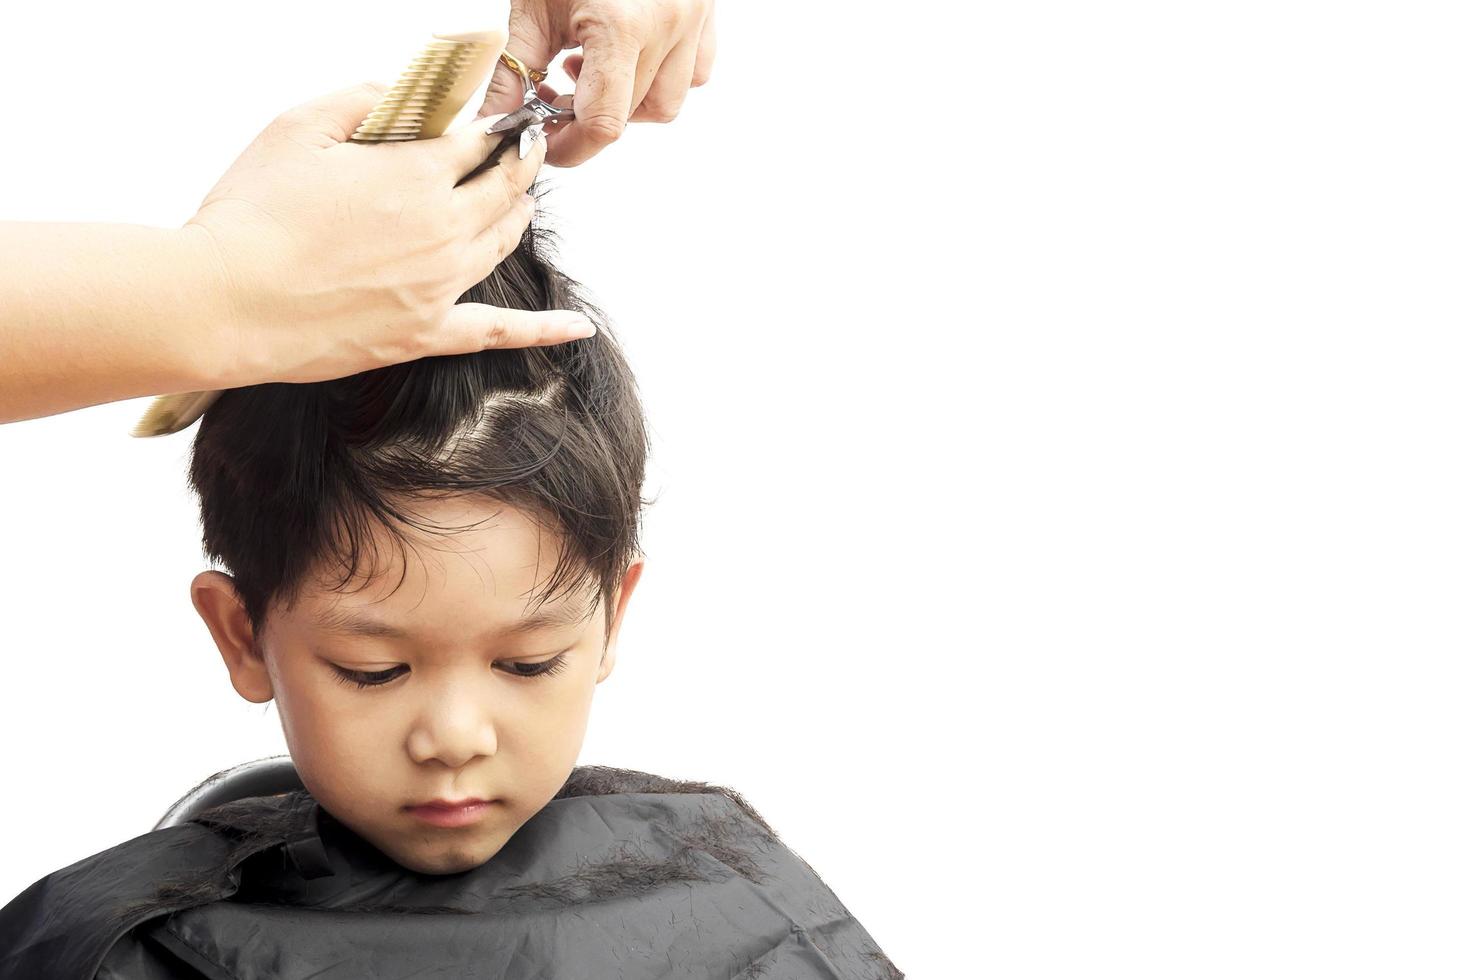 un ragazzo è tagliato i capelli dal parrucchiere isolato su sfondo bianco foto